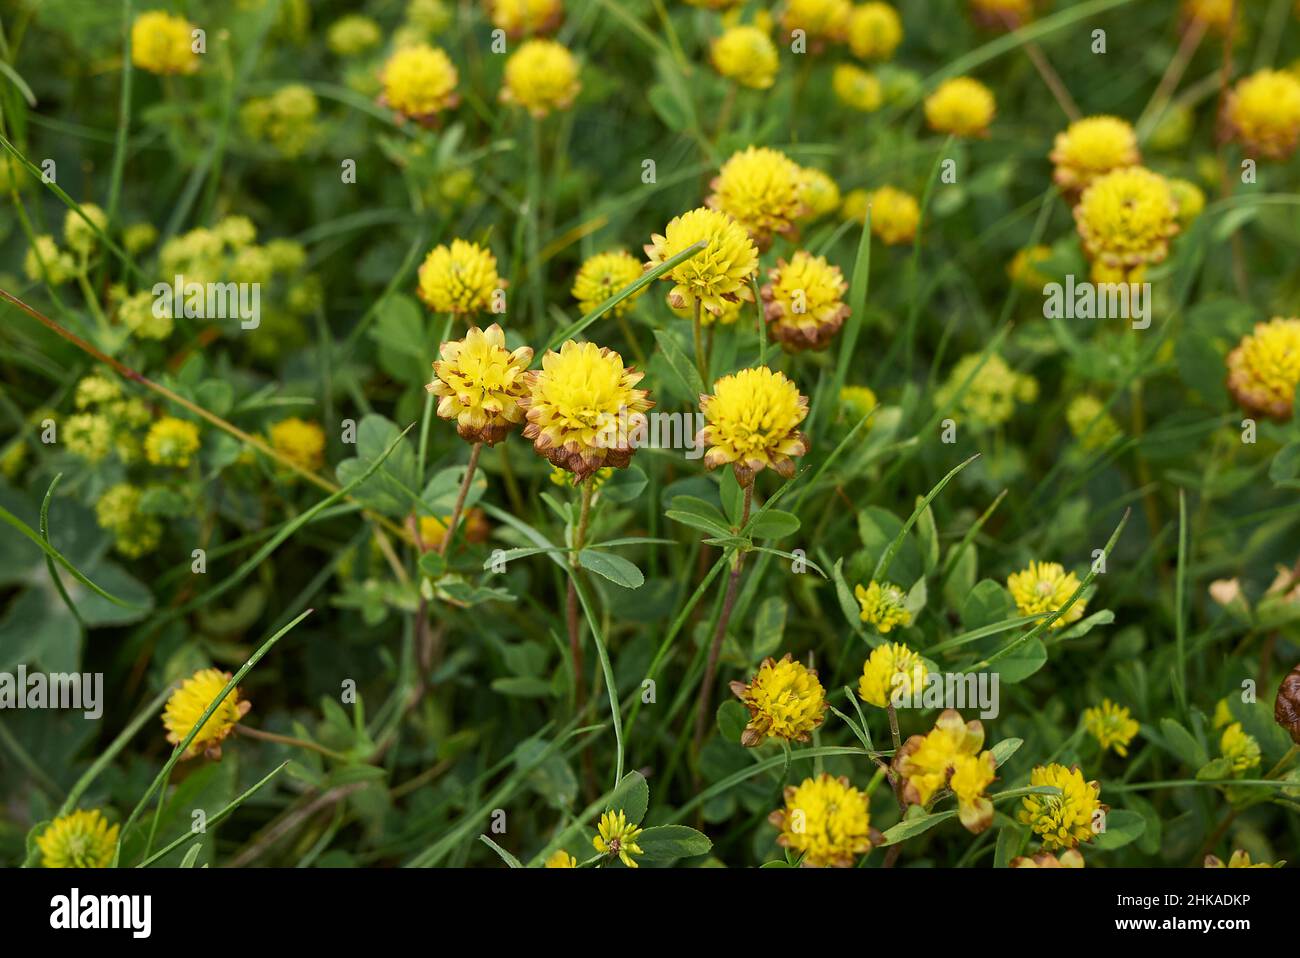 Trifolium badium yellow inflorescence Stock Photo